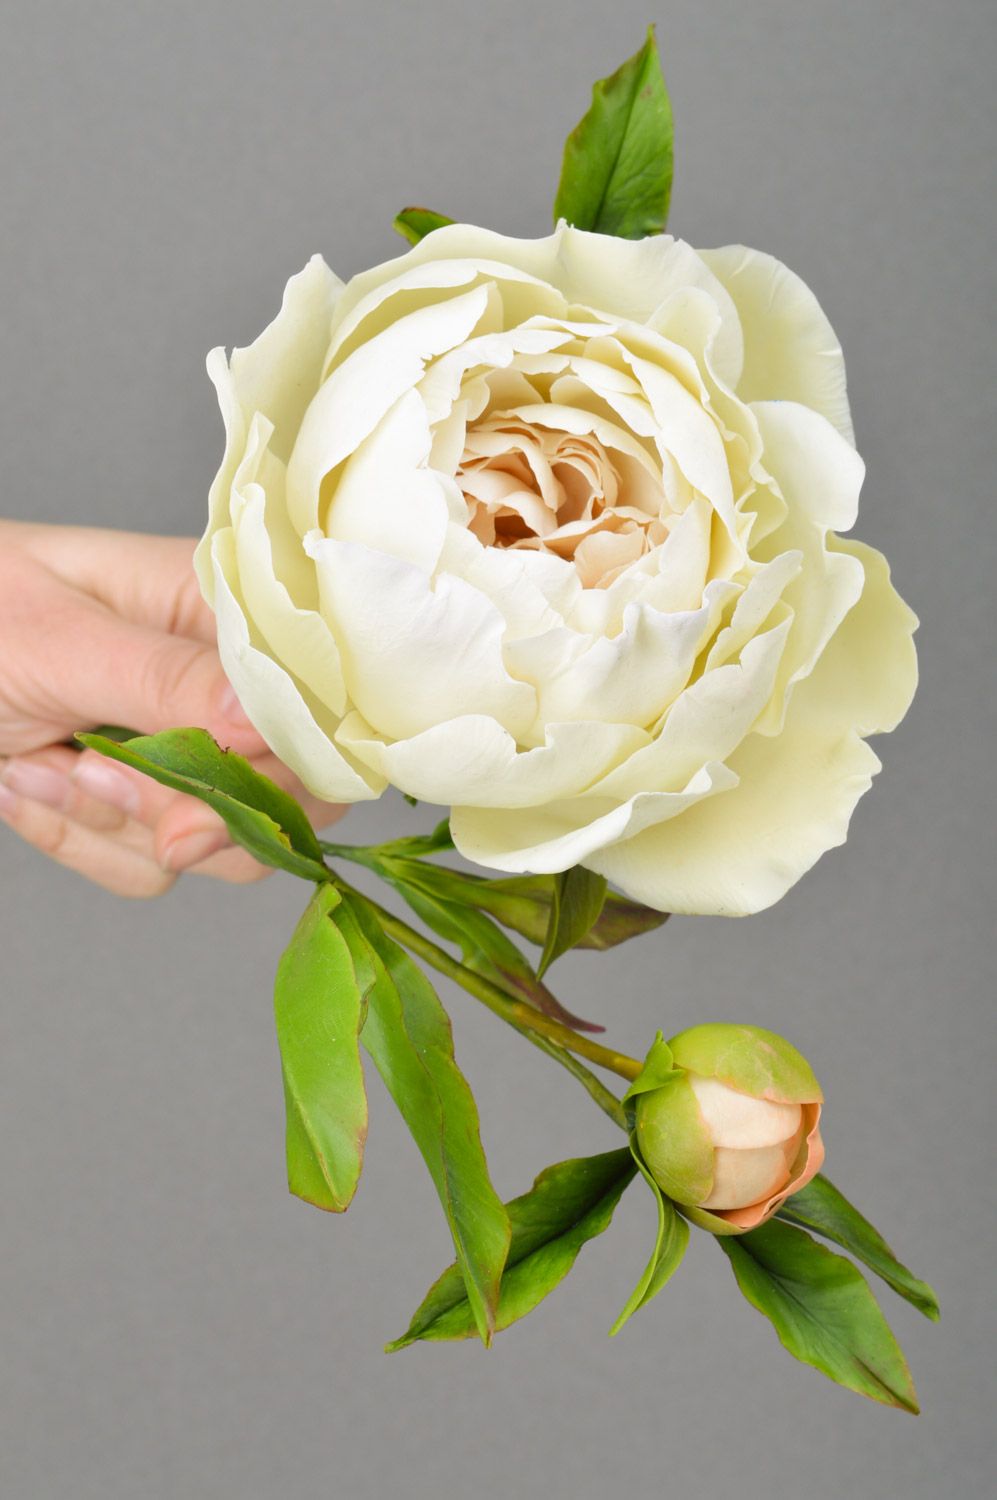 Цветок пиона из полимерной глины ручной работы белый крупный декоративный фото 5